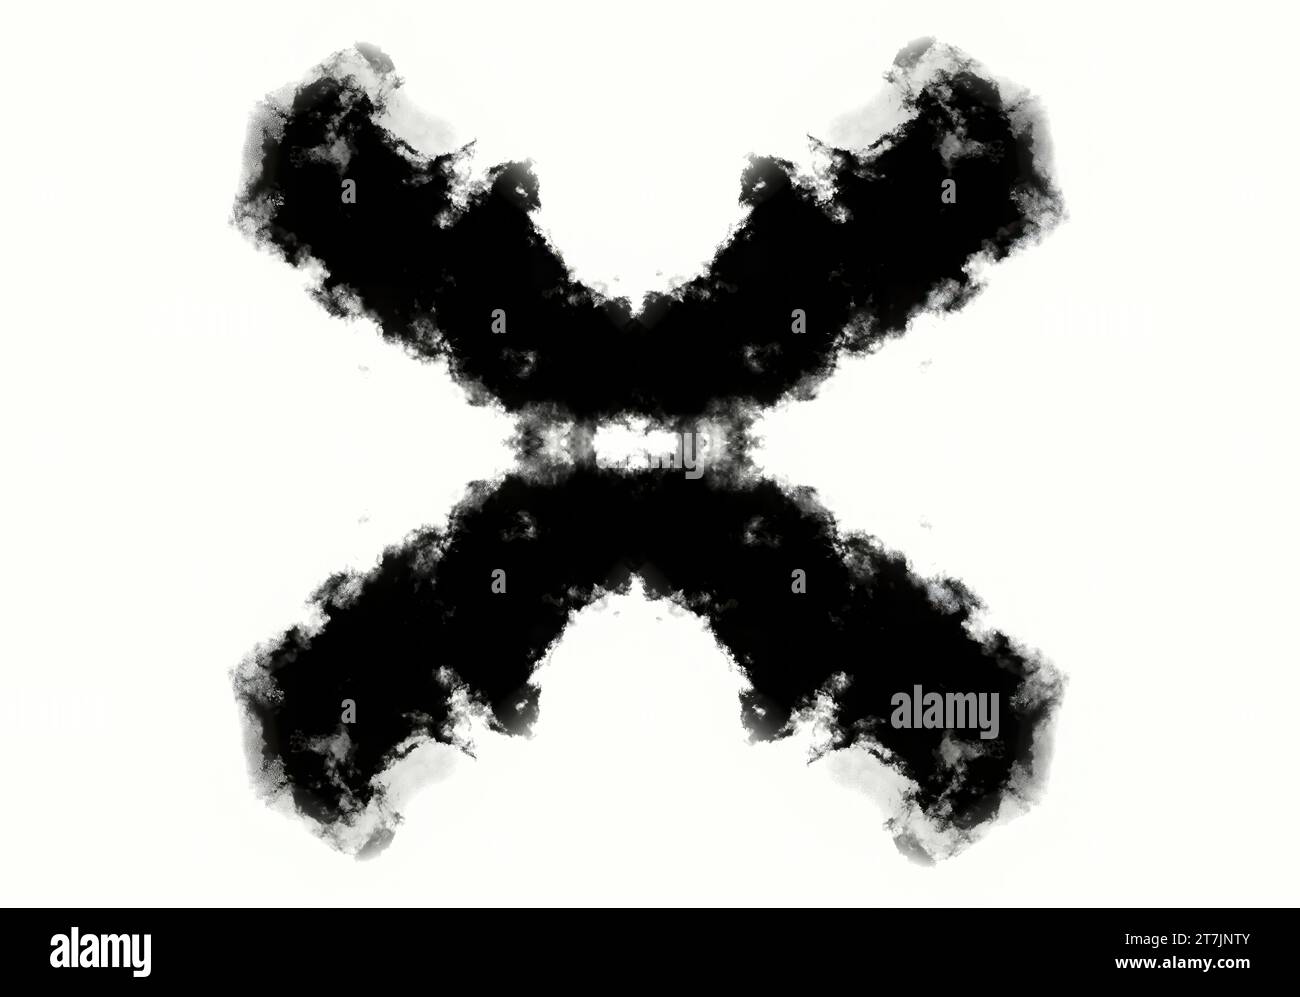 Croix de test de Rorschach faite d'encre, carte de test de psychologie illustration conceptuelle Banque D'Images